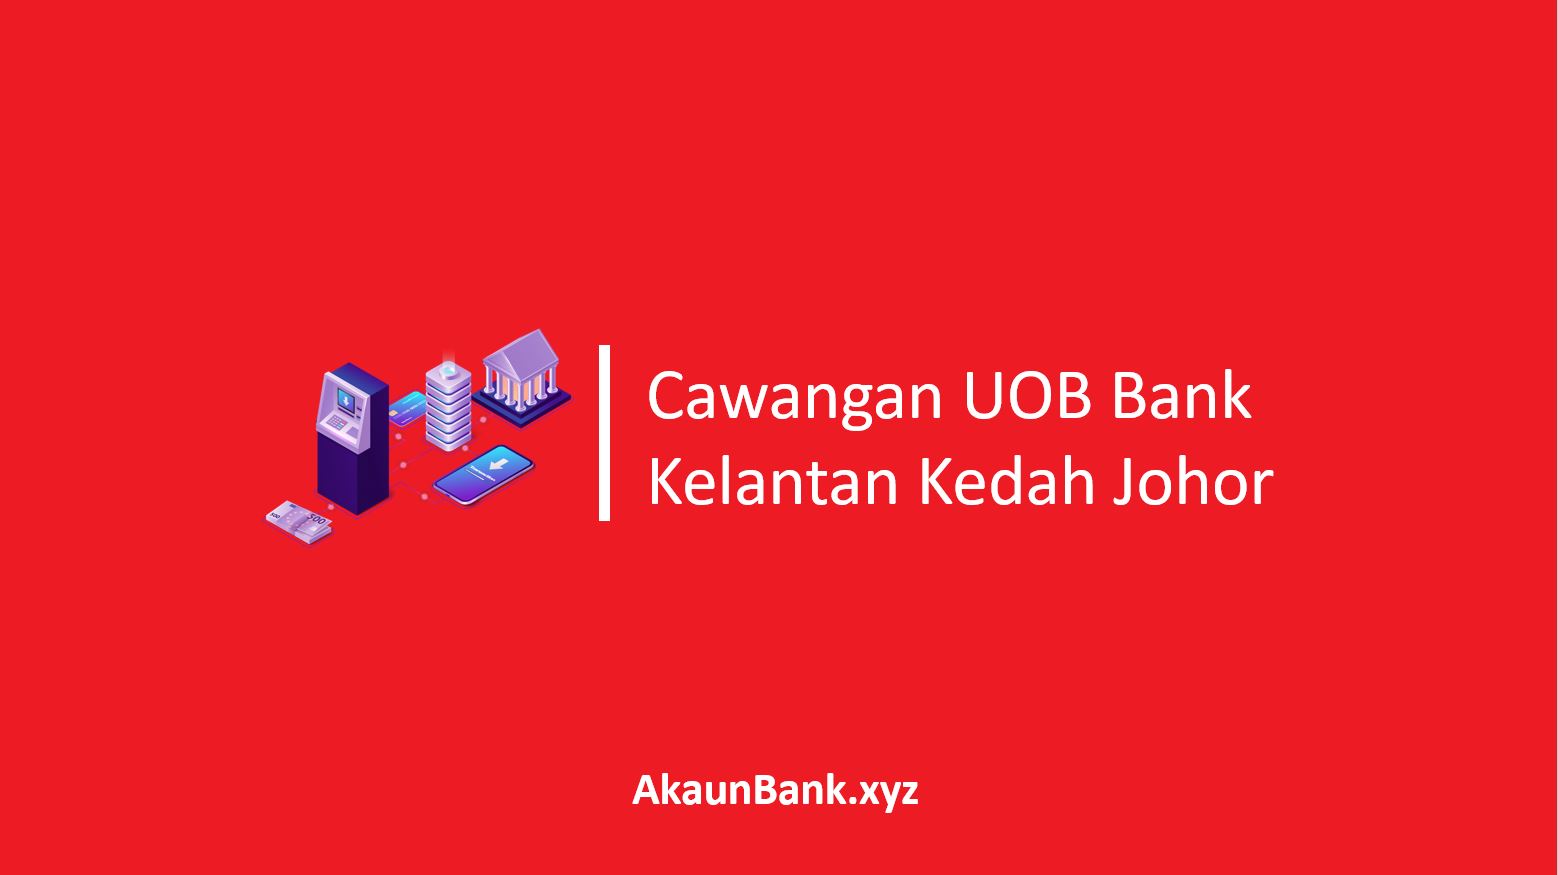 Cawangan UOB Bank Kelantan Kedah Johor